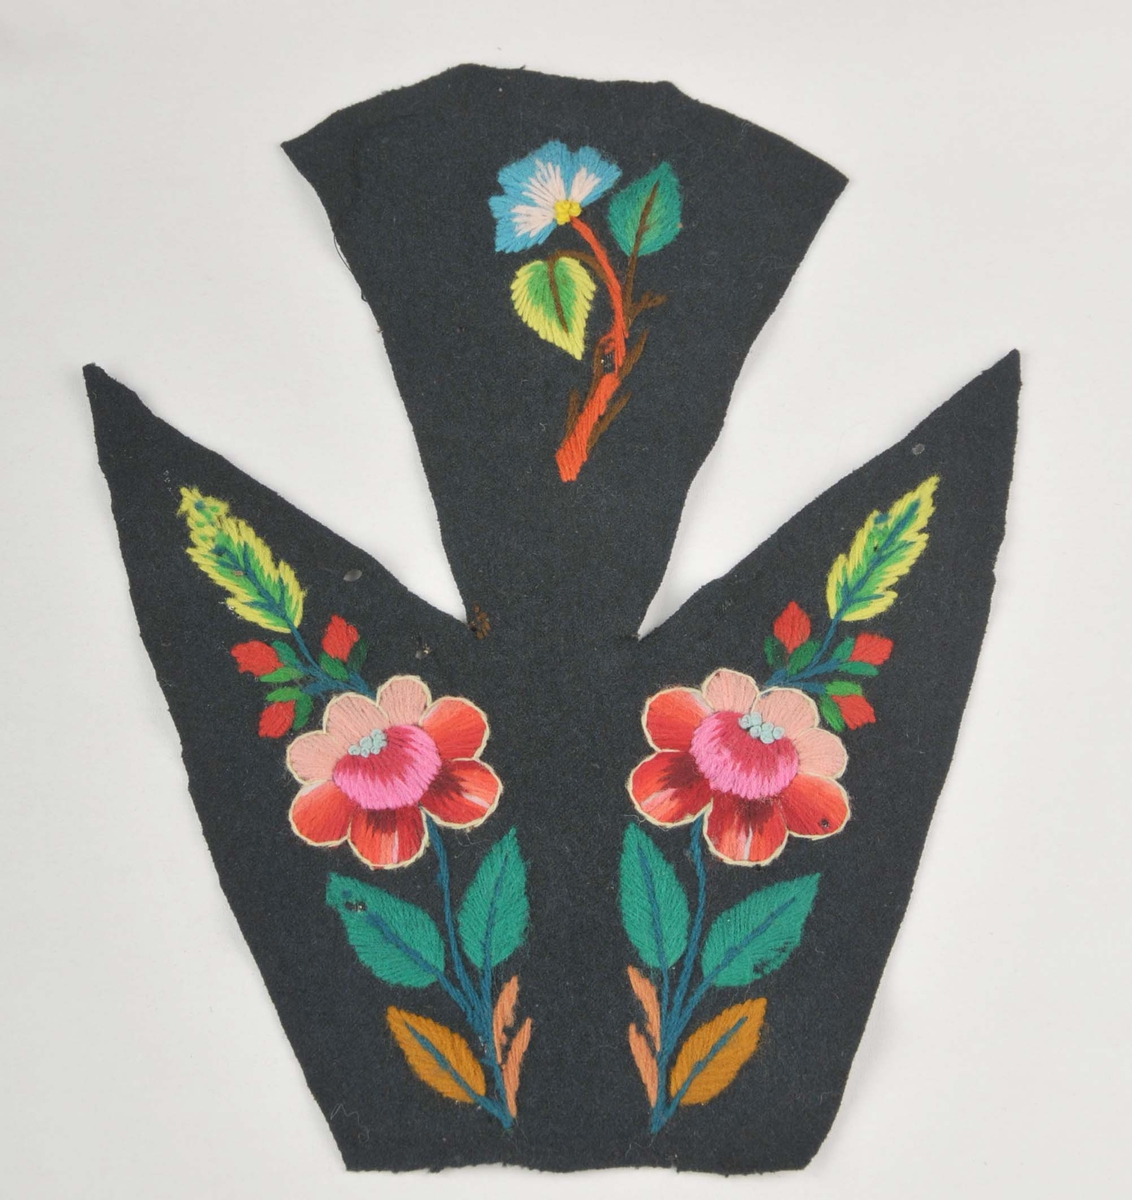 Broderi på svart klede, del av bakstykke til eit draktliv. Motivet er blomar og blad i sterke fargar. Blomene er kanta med kontursting i kvitt. 